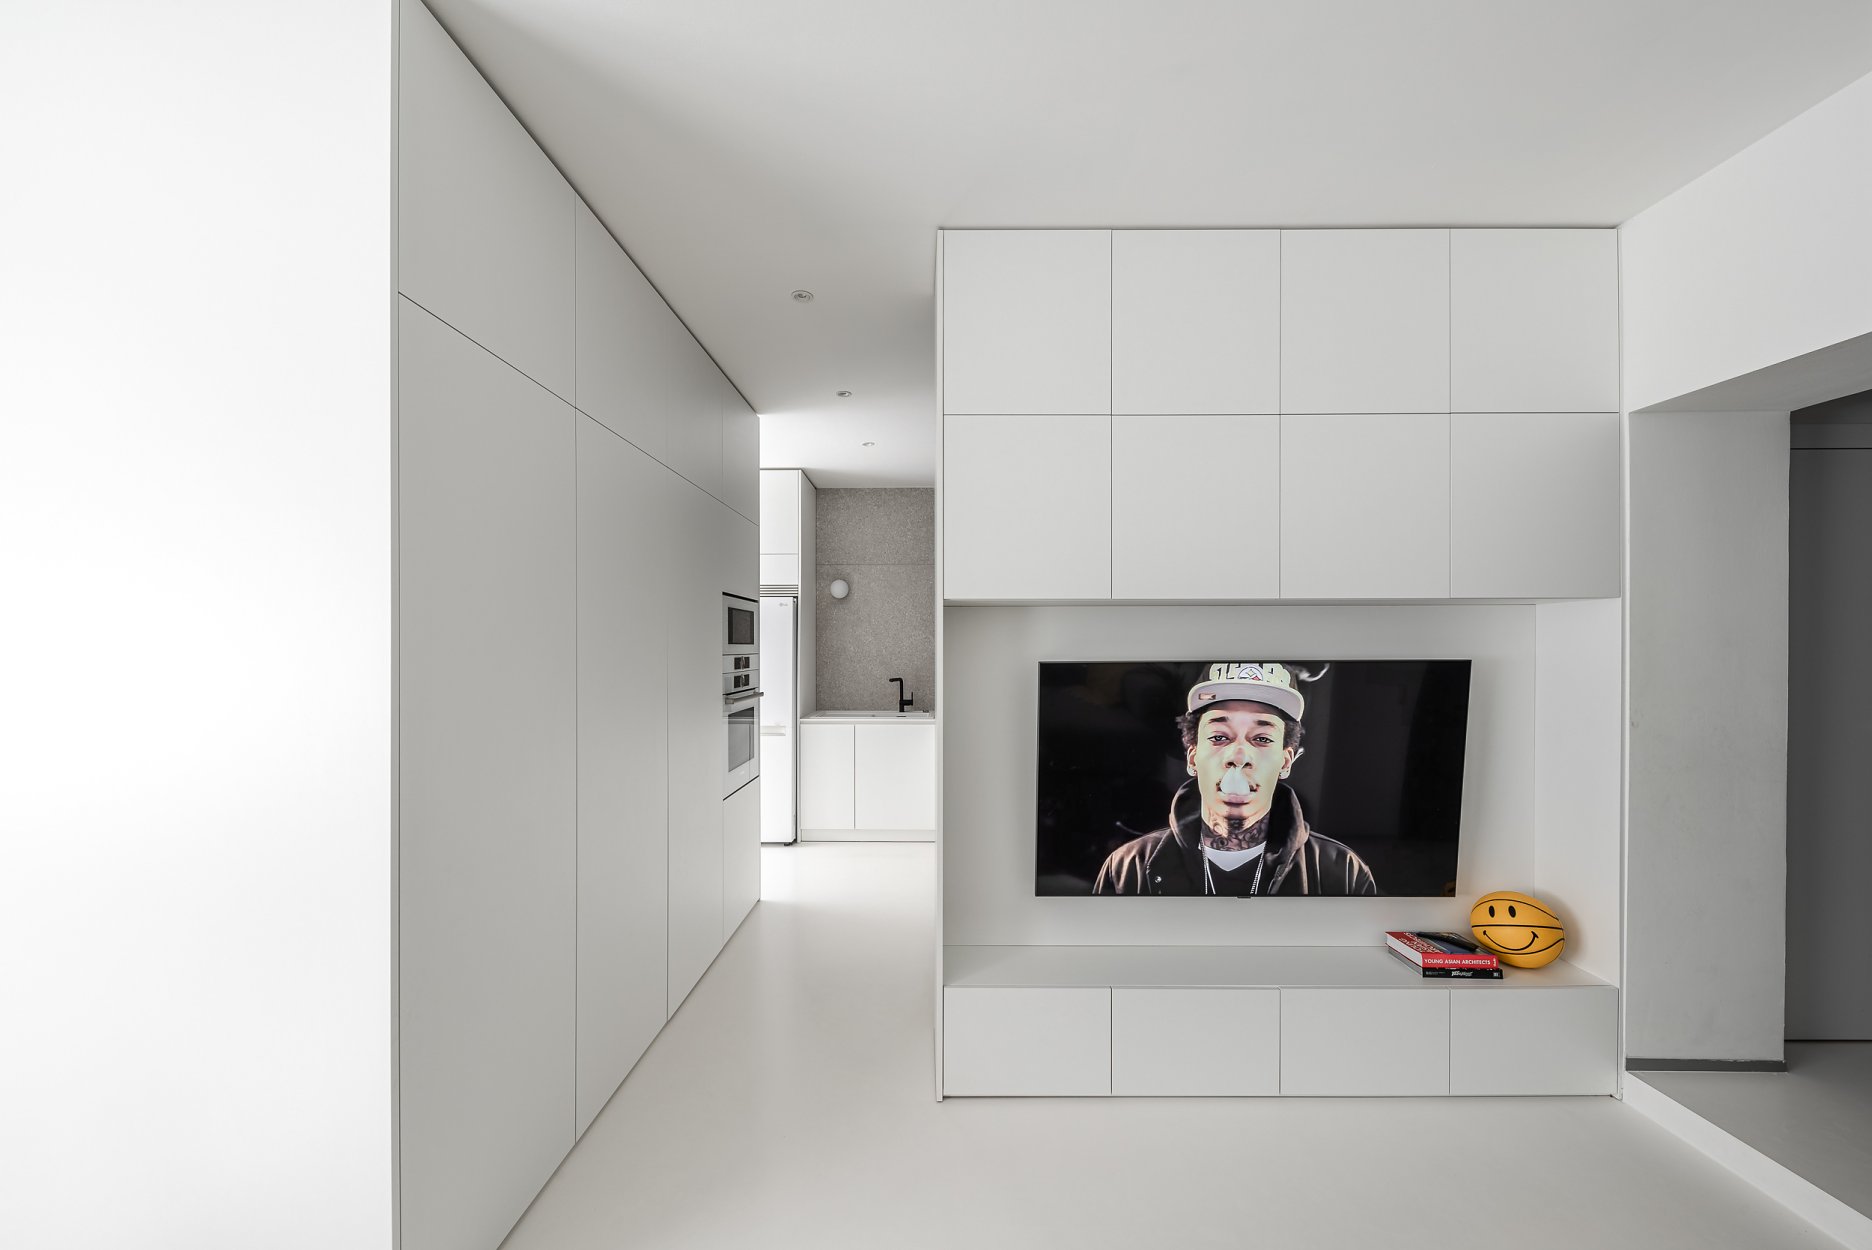 Abstrakcia výrazu: obývacia izba je vymedzená nábytkom vyrobeným na mieru – televíznou stenou, ktorá čiastočne prekrýva kuchynskú linku. Dizajn vstavaného nábytku je zredukovaný na estetiku krajného minimalizmu.